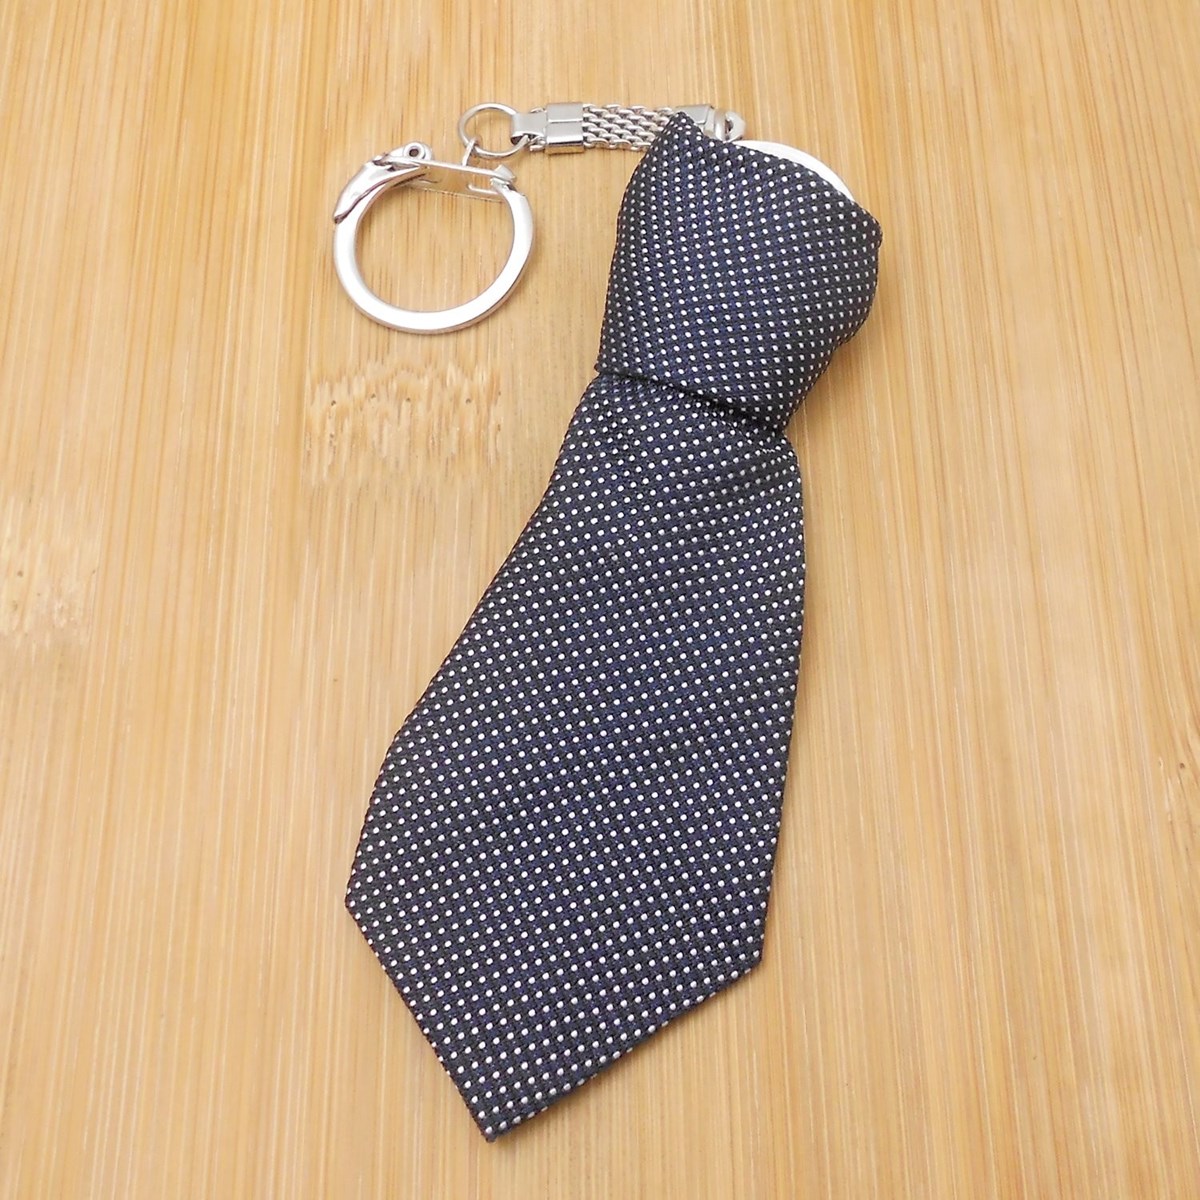 Porte-clés cravate en tissu moucheté pois blanc sur noir argenté - vue 2